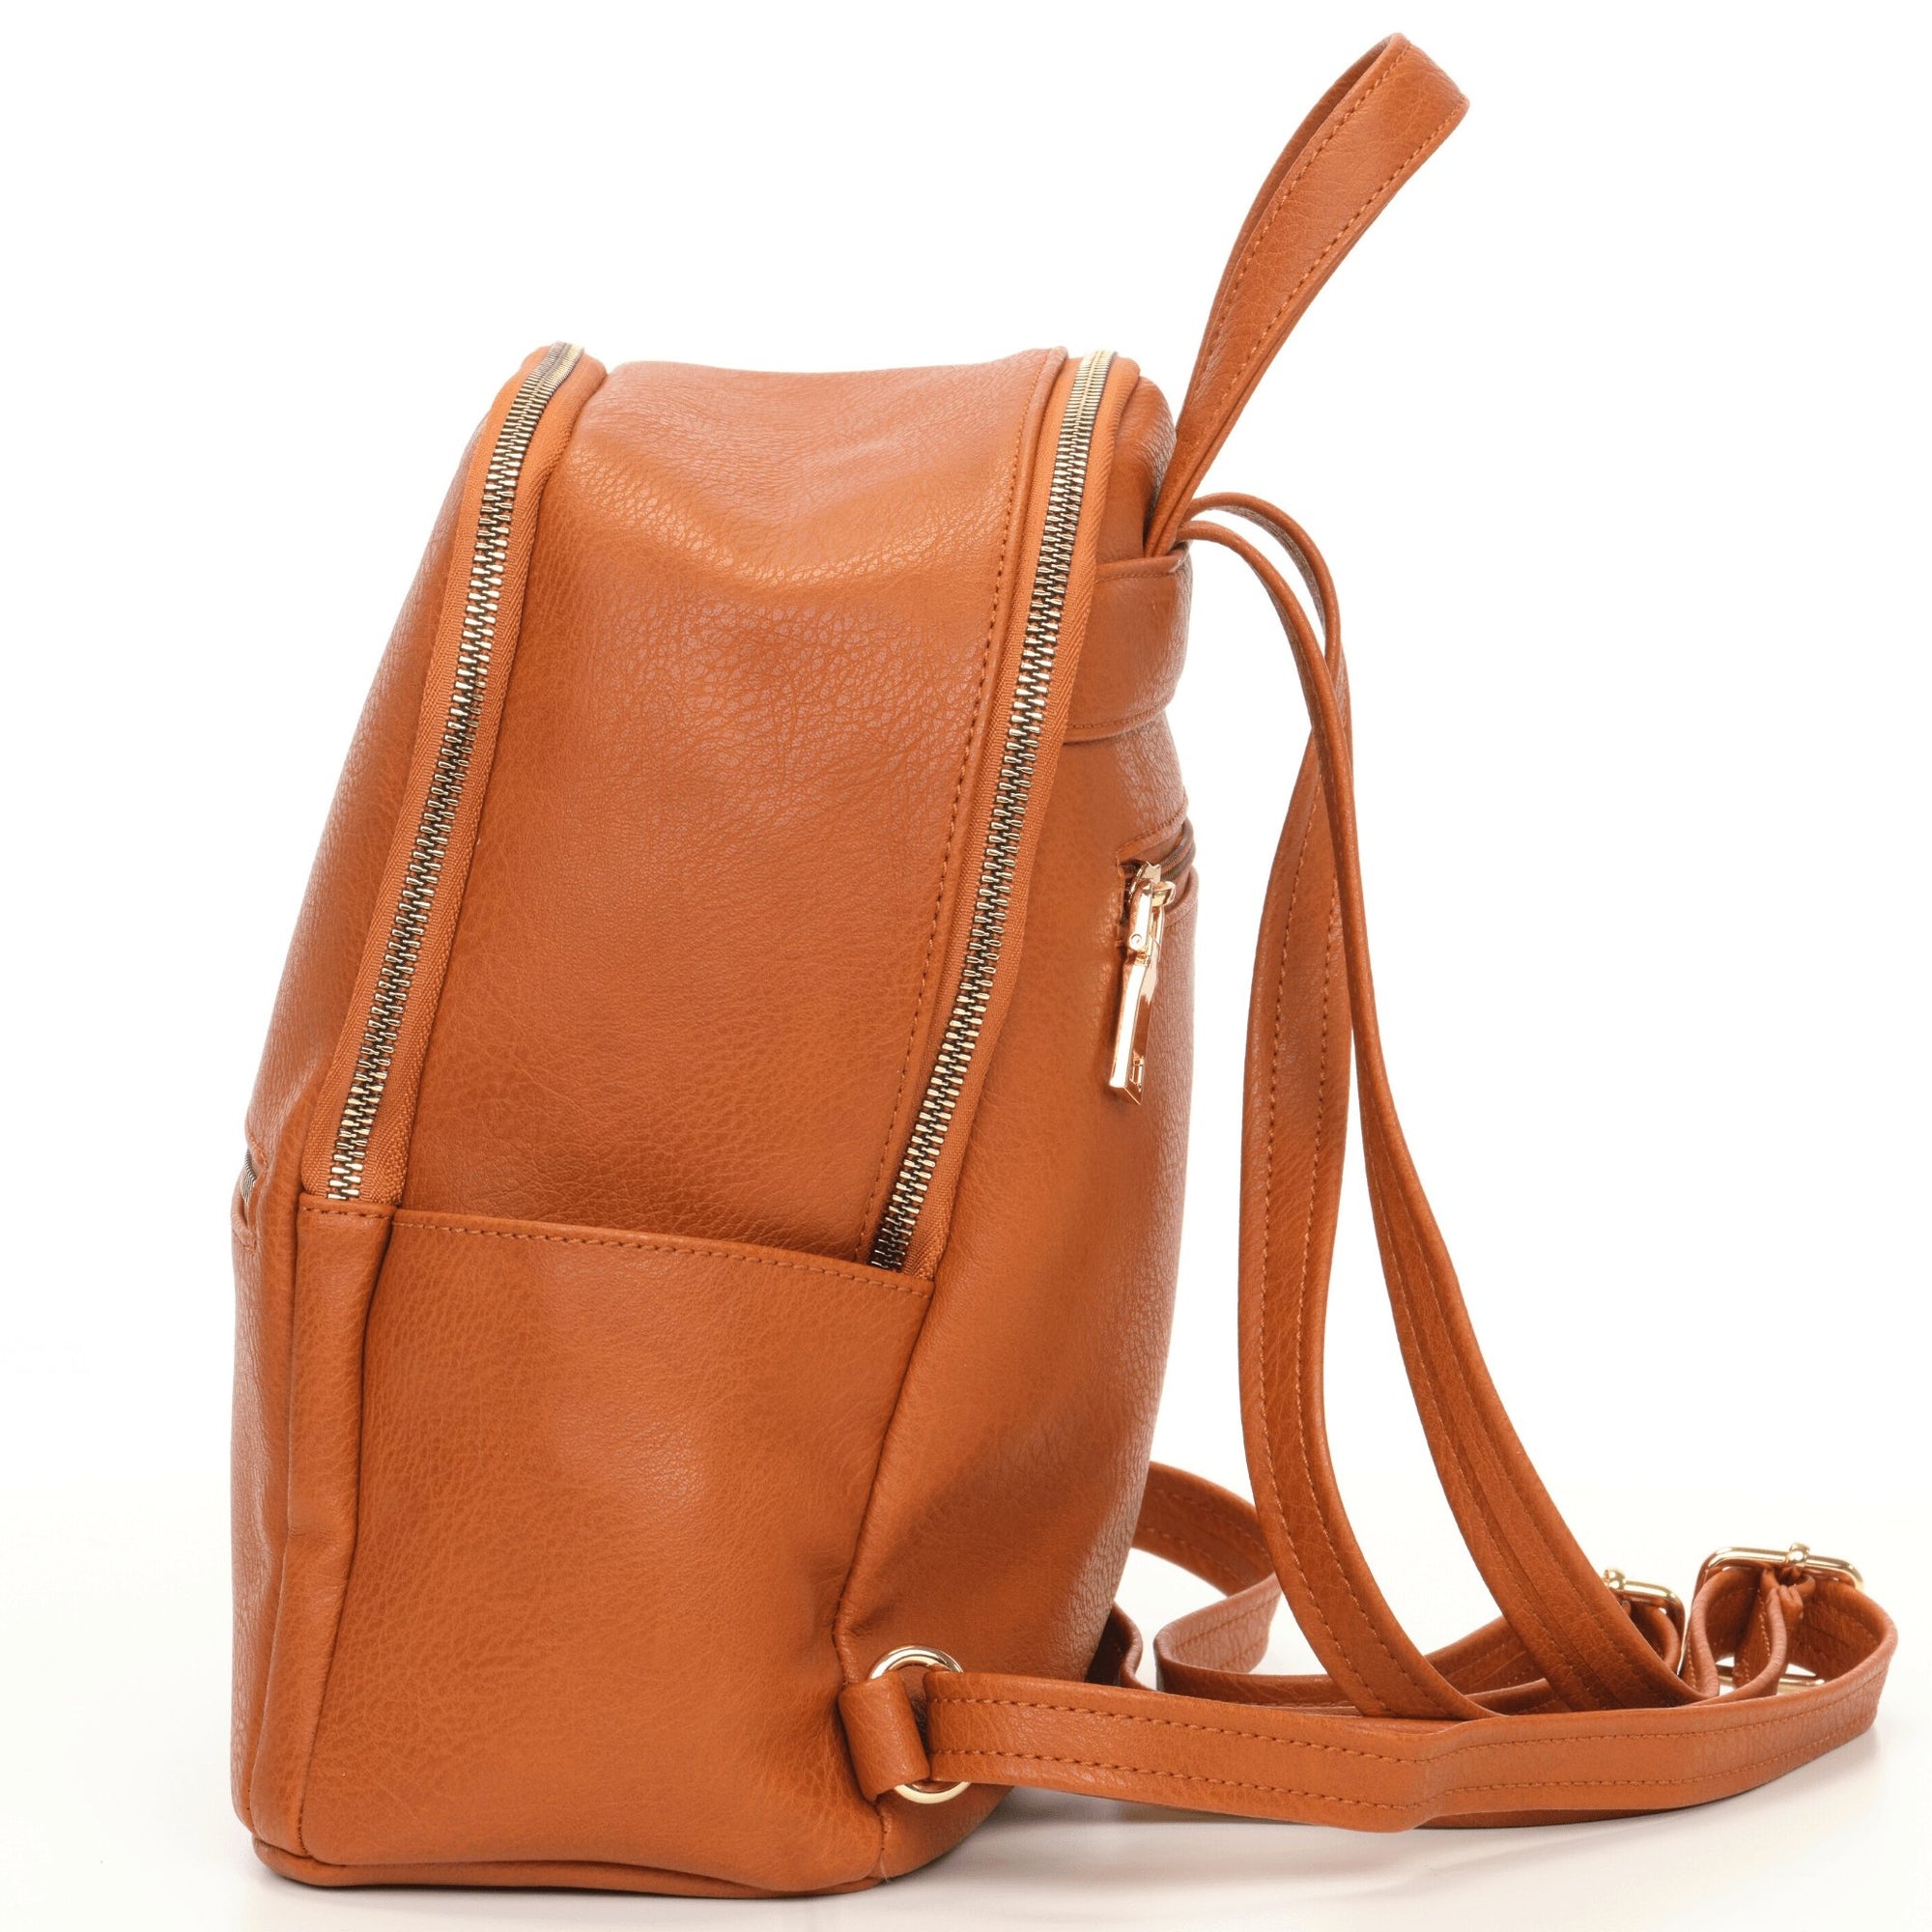 La Mère Original Vegan Leather Diaper Bag Backpack